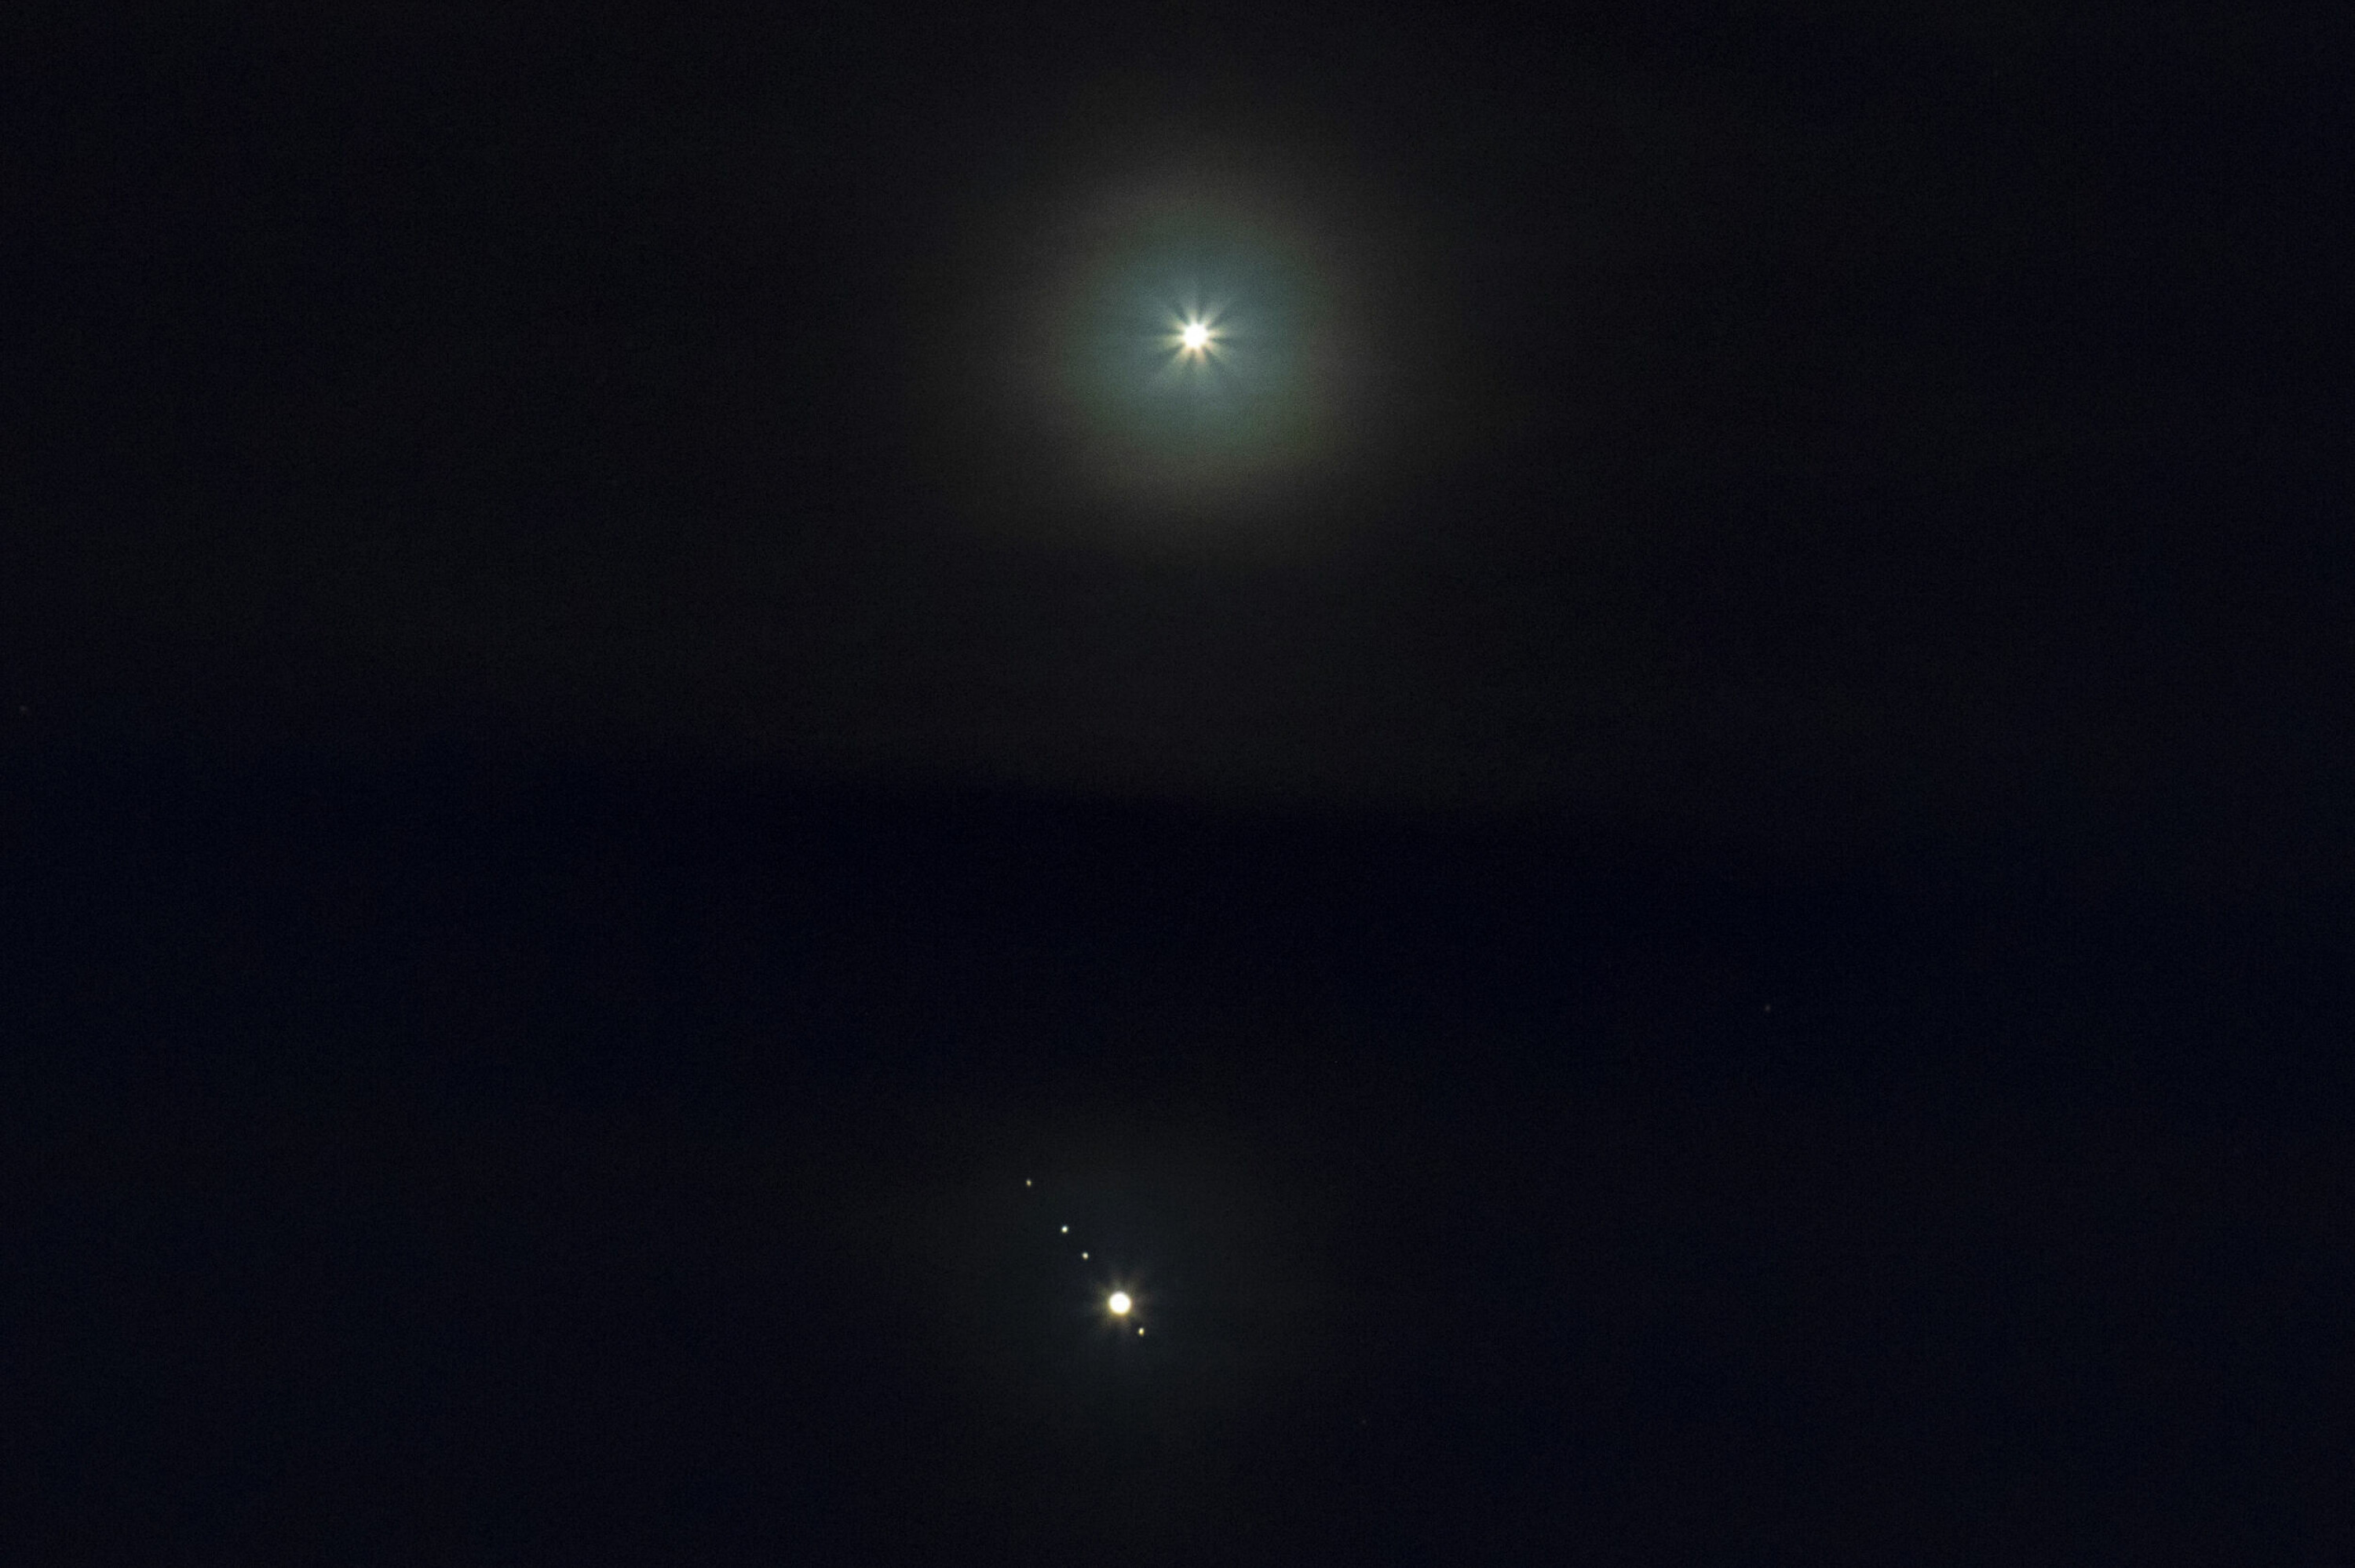 UVANLIG SYN: Her avfotografert fra Drammen onsdag kveld, med et noe høyt skylag som la en liten demper på stemningen. For ordens skyld: Venus er øverst, Jupiter med sine måner nederst i bildet.